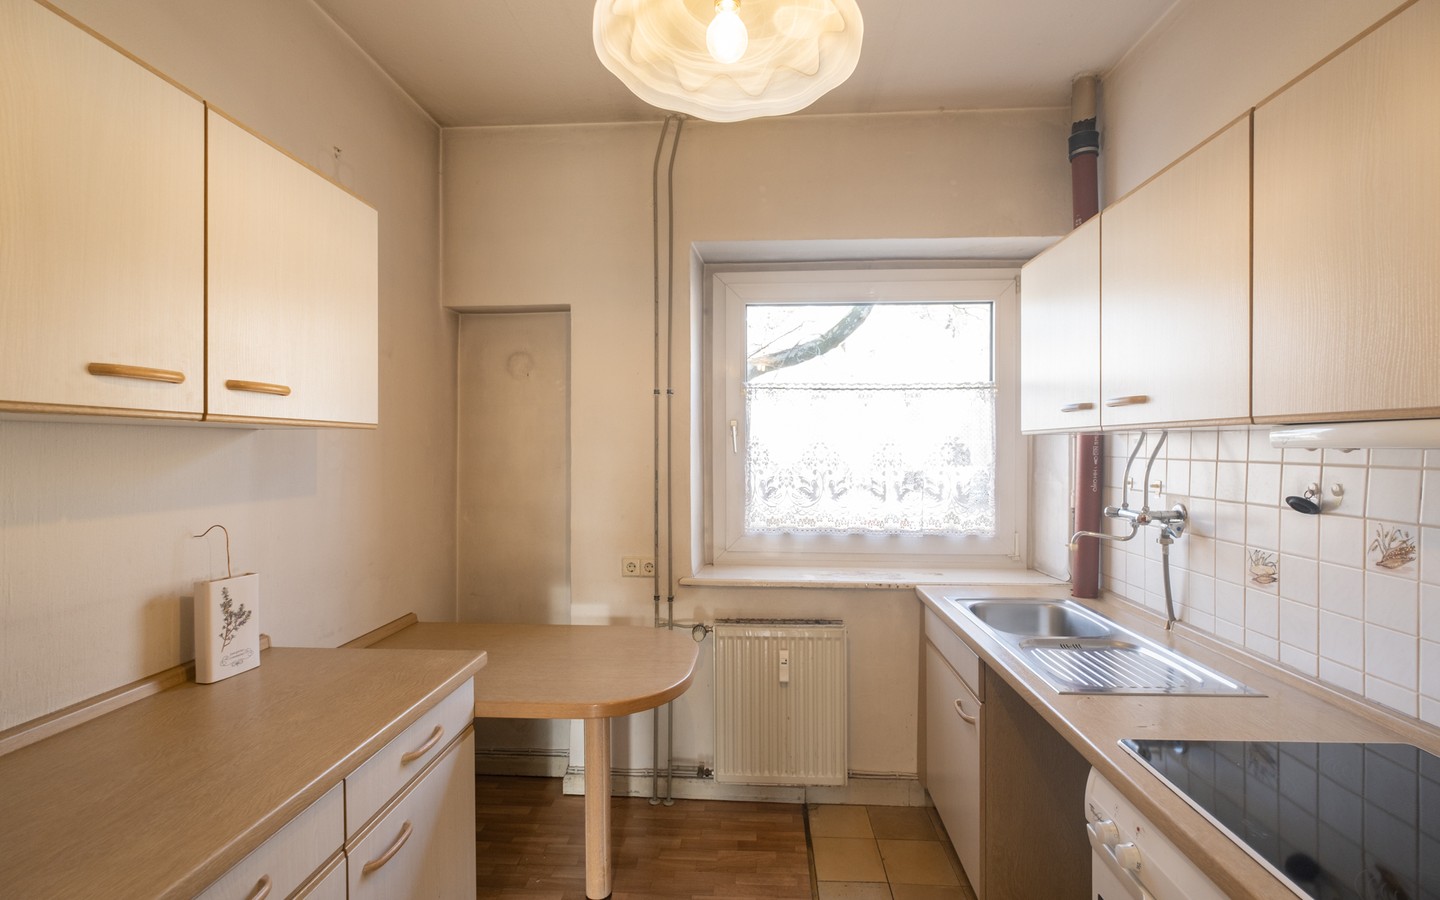 Küche - Seltene Gelegenheit in HD-Neuenheim: Bezugsfreie 3-Zimmer-Wohnung mit Loggia in zentraler Lage